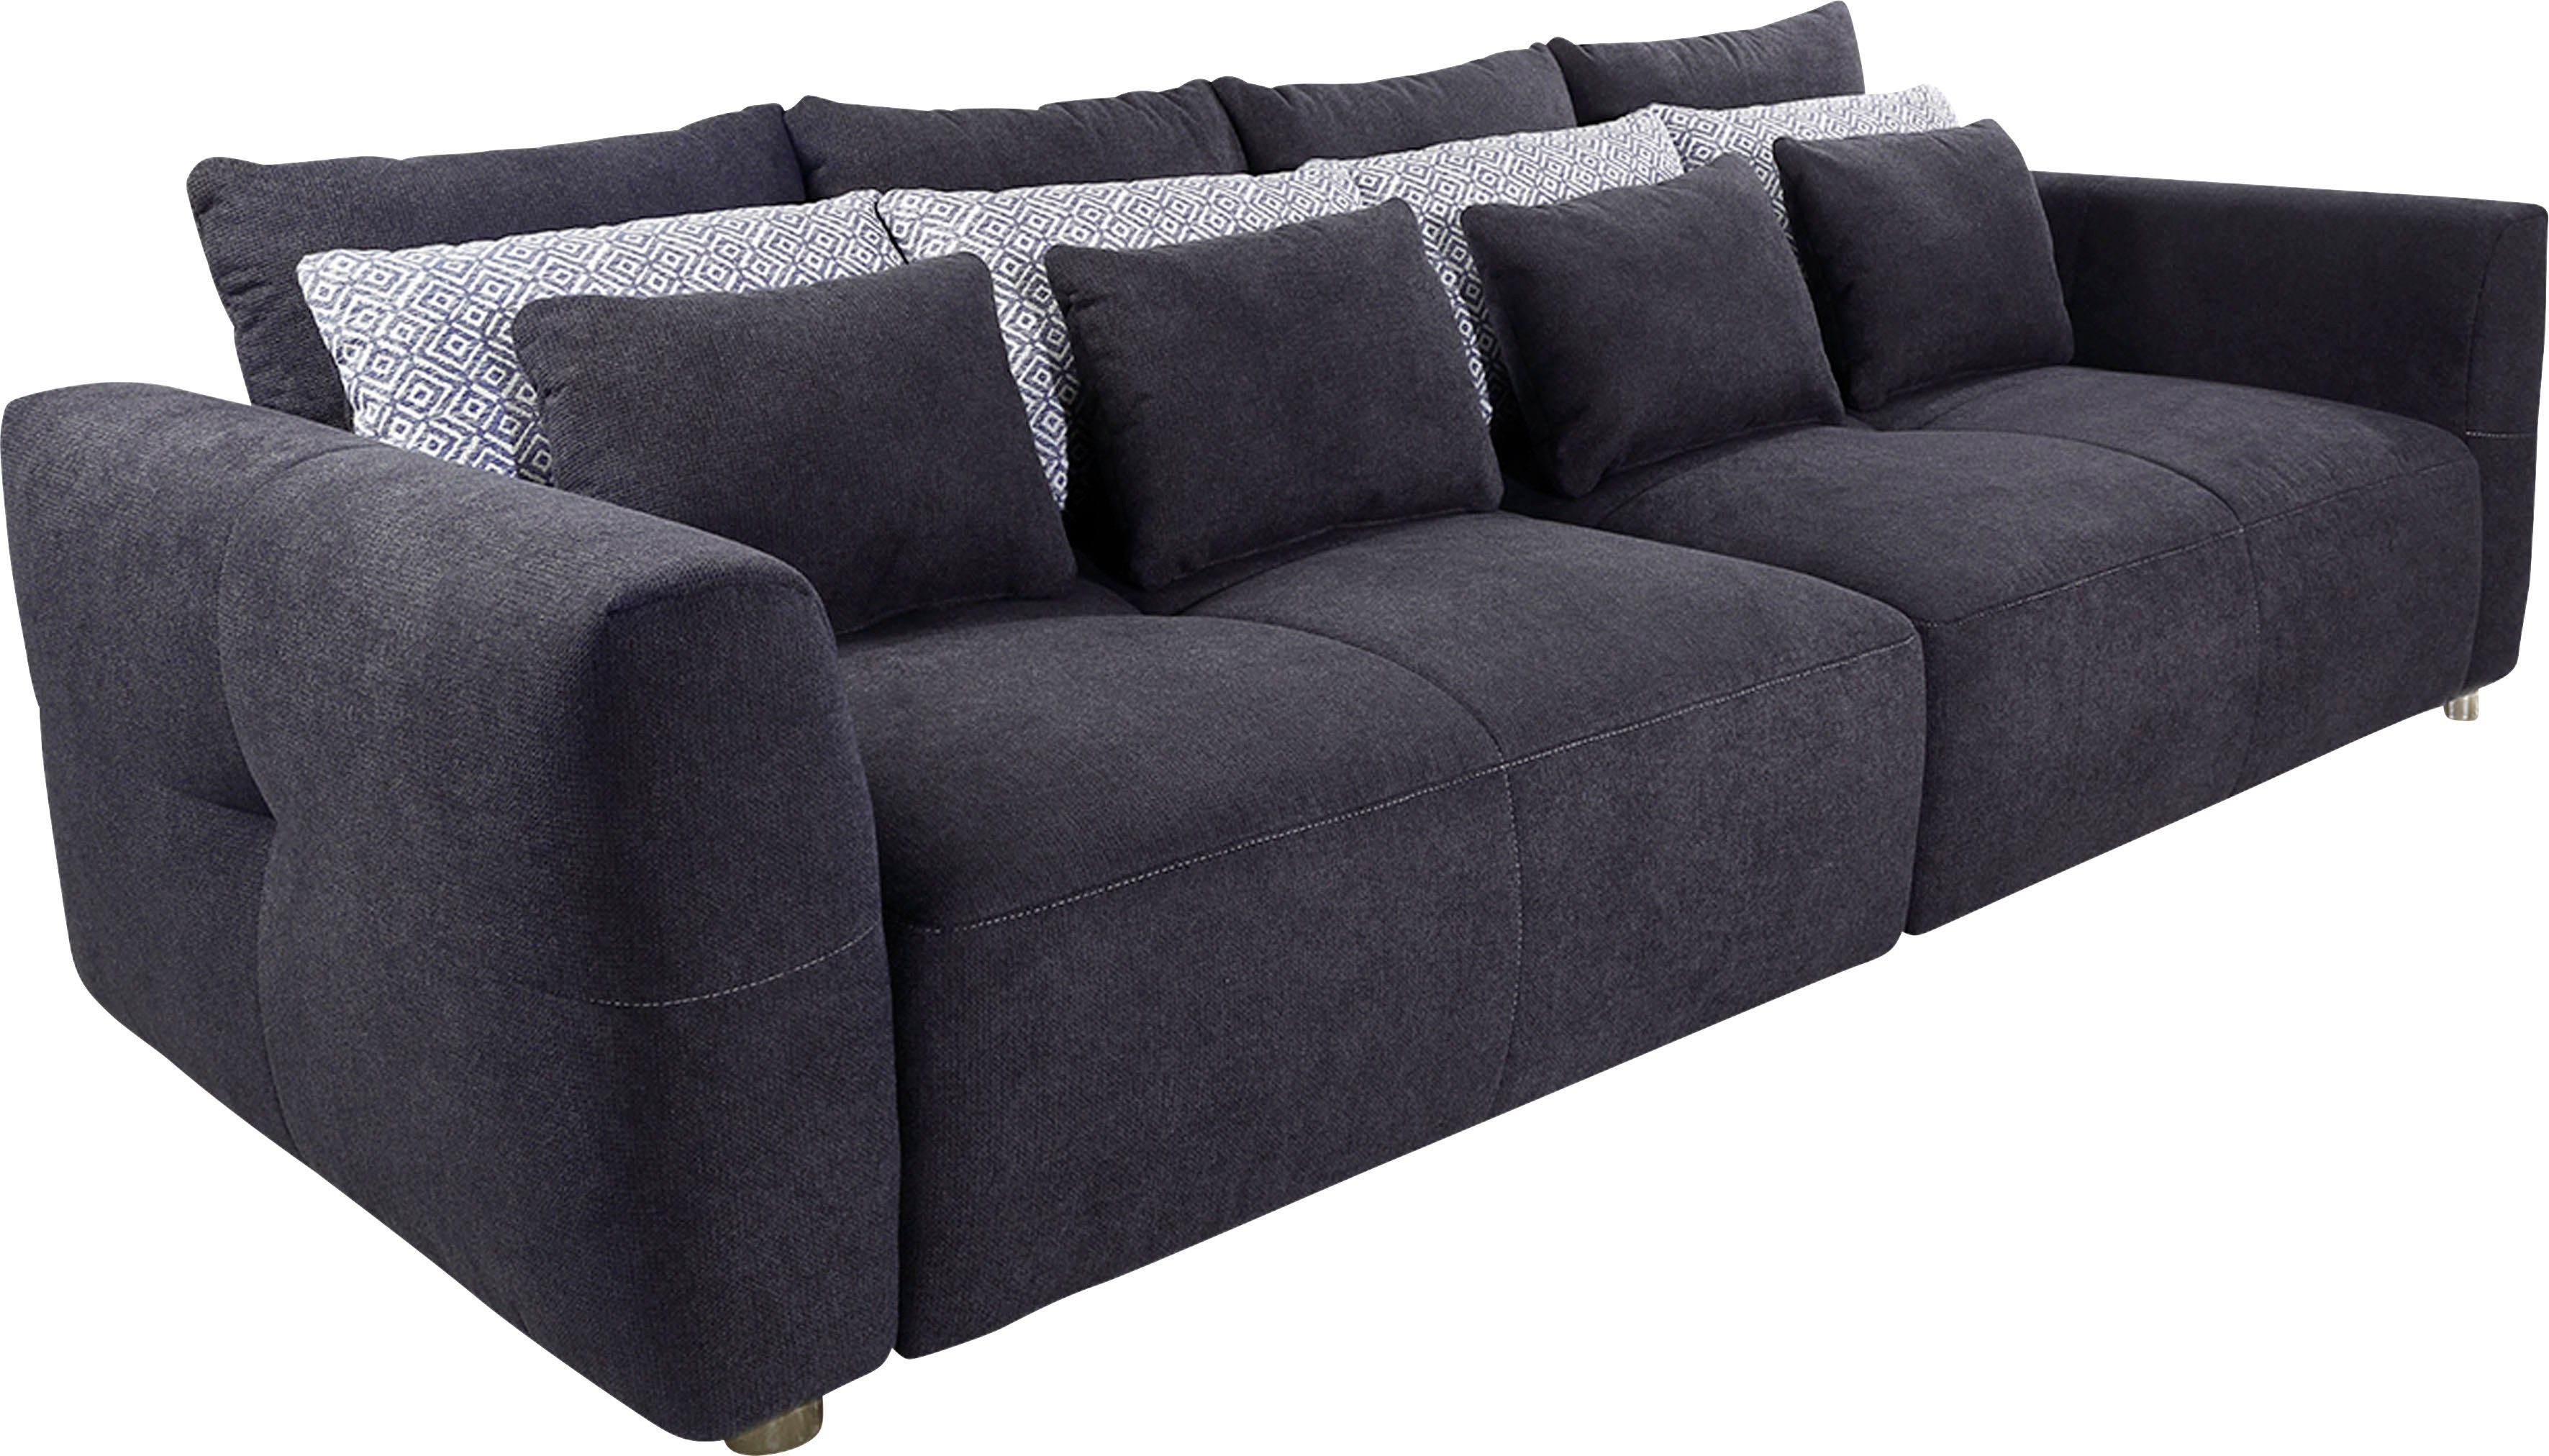 Jockenhöfer Gruppe Gulliver, mit Big-Sofa für Federkernpolsterung angenehmen Sitzkomfort kuscheligen